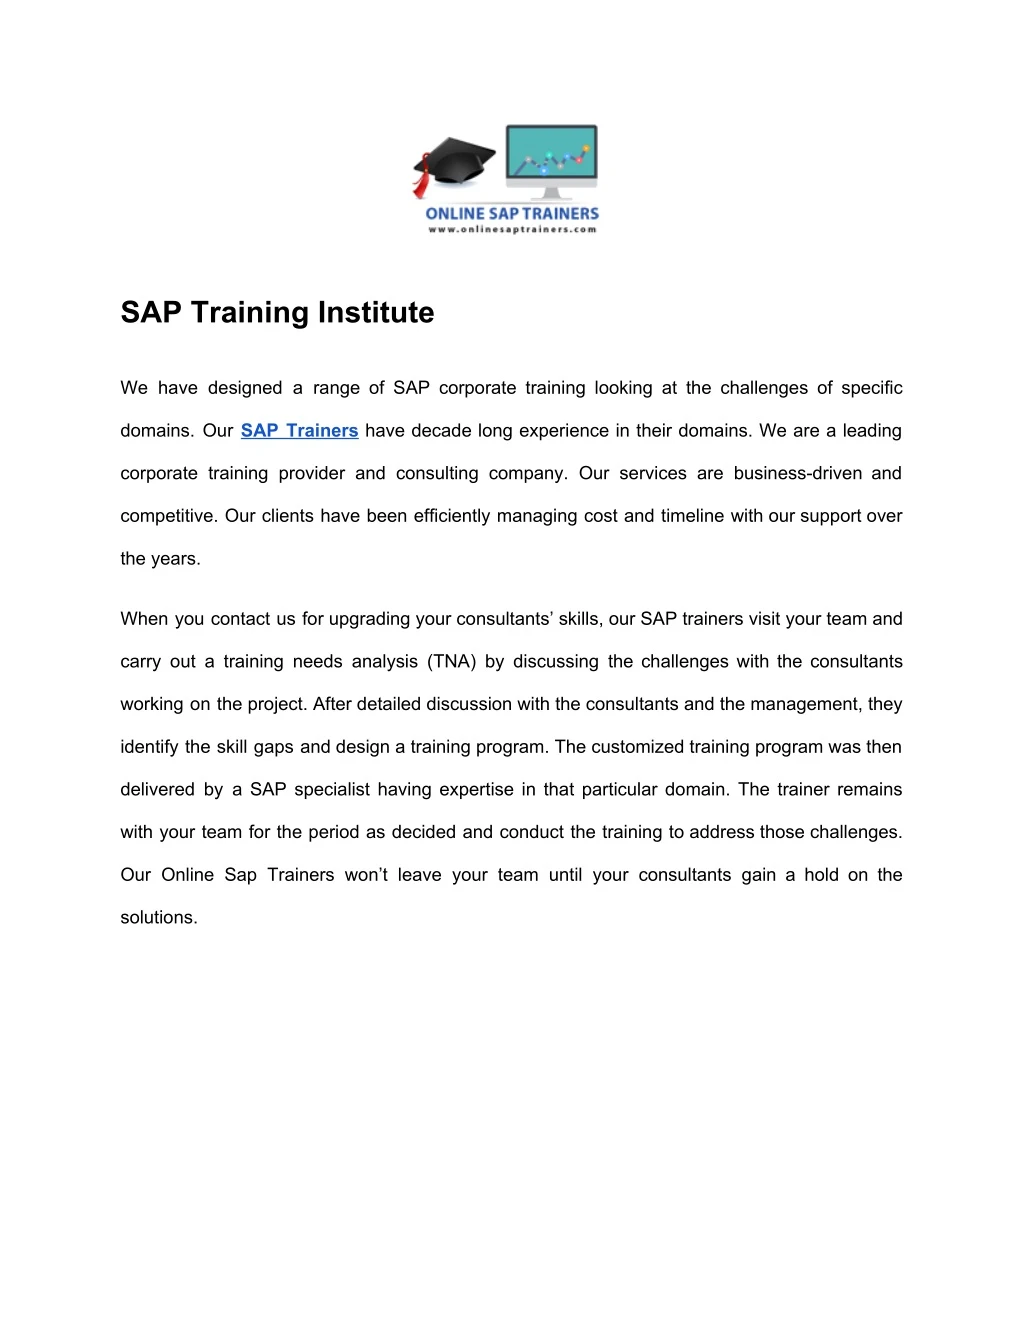 sap training institute we have designed a range